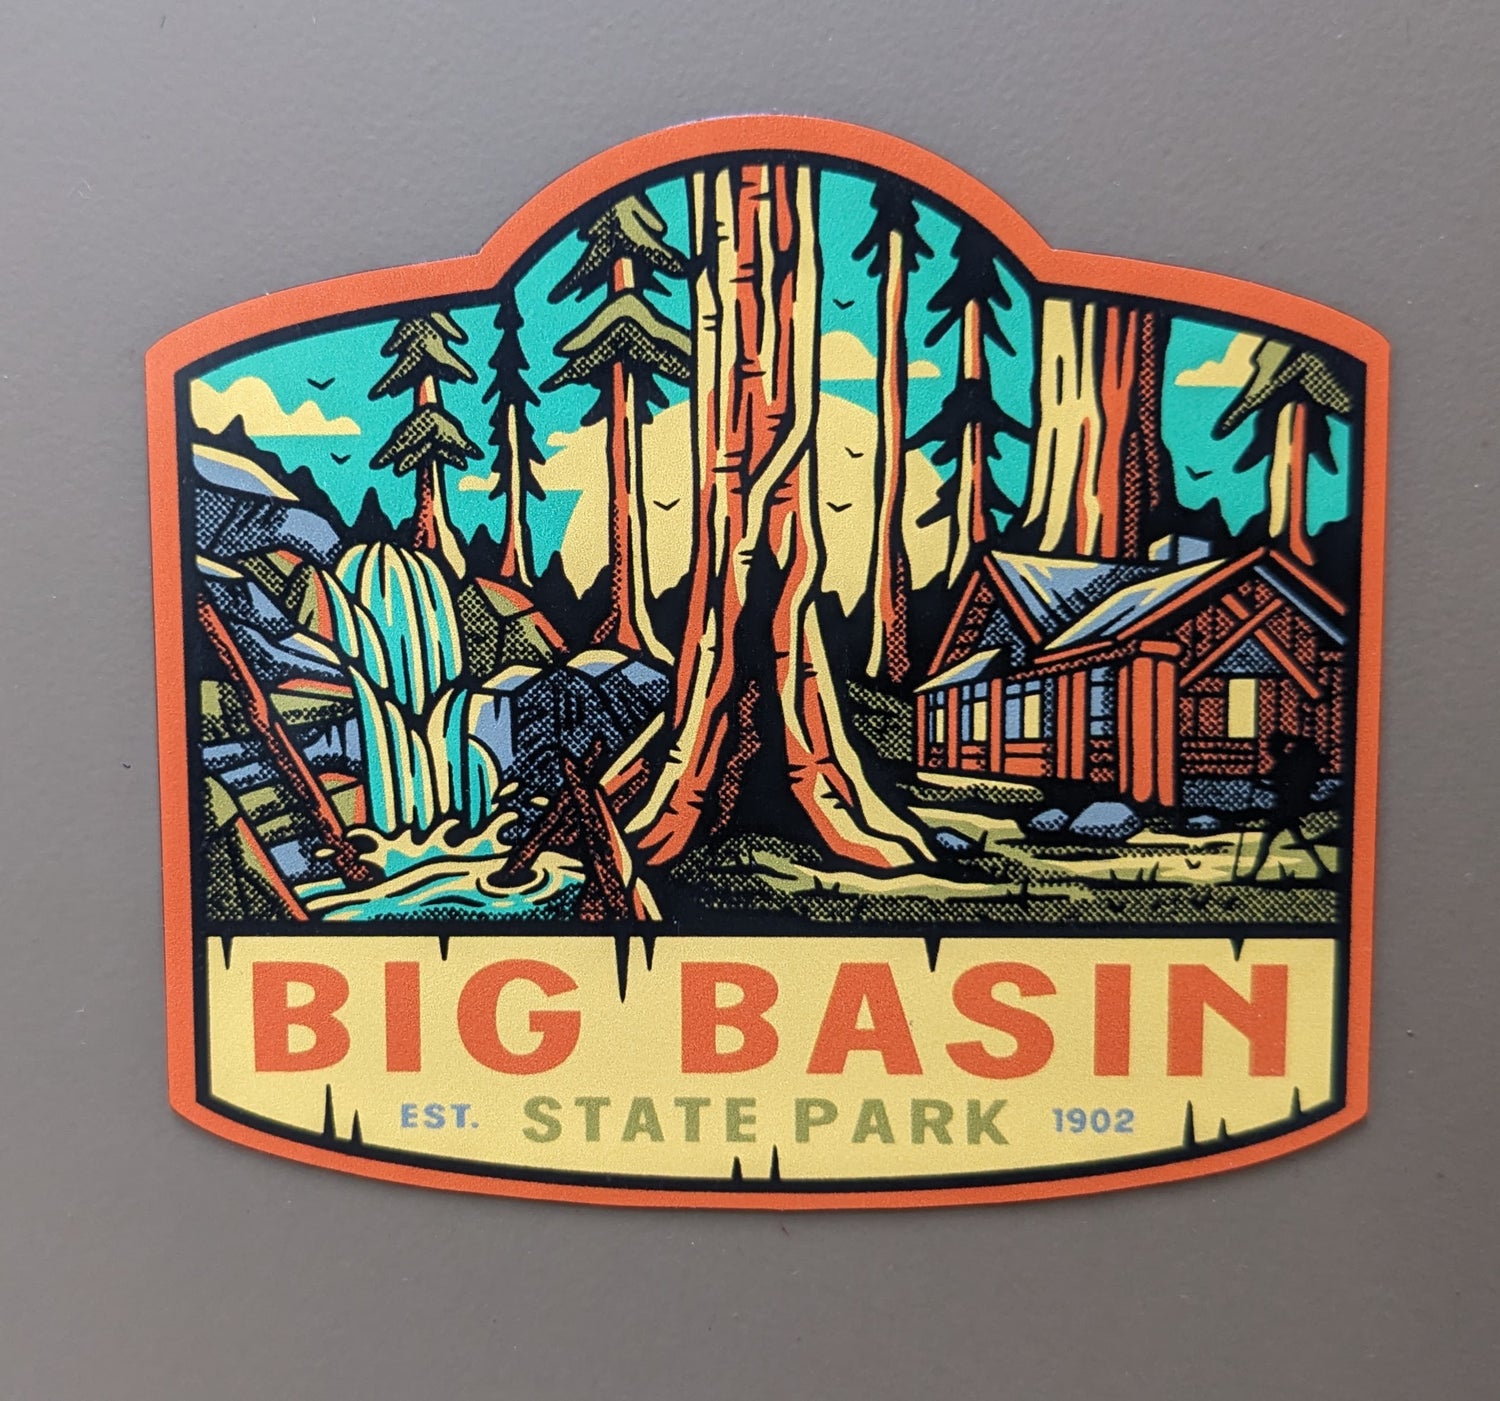 Big Basin Redwoods state park magnet, established in 1902